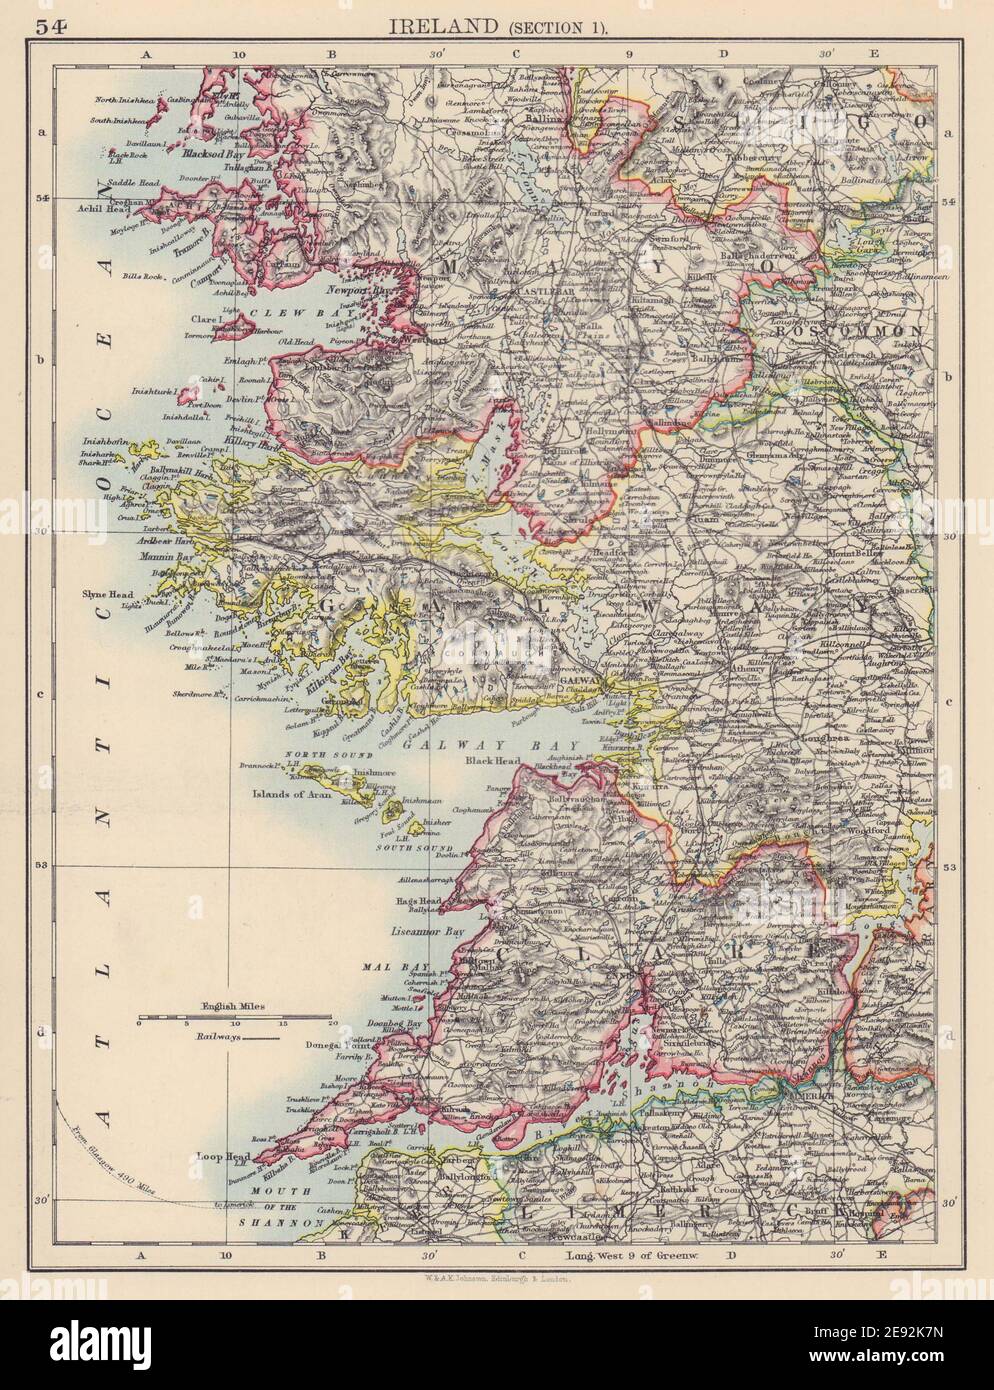 COSTA OESTE DE IRLANDA. Galway Mayo Clare. Río Shannon. JOHNSTON 1901 mapa antiguo Foto de stock